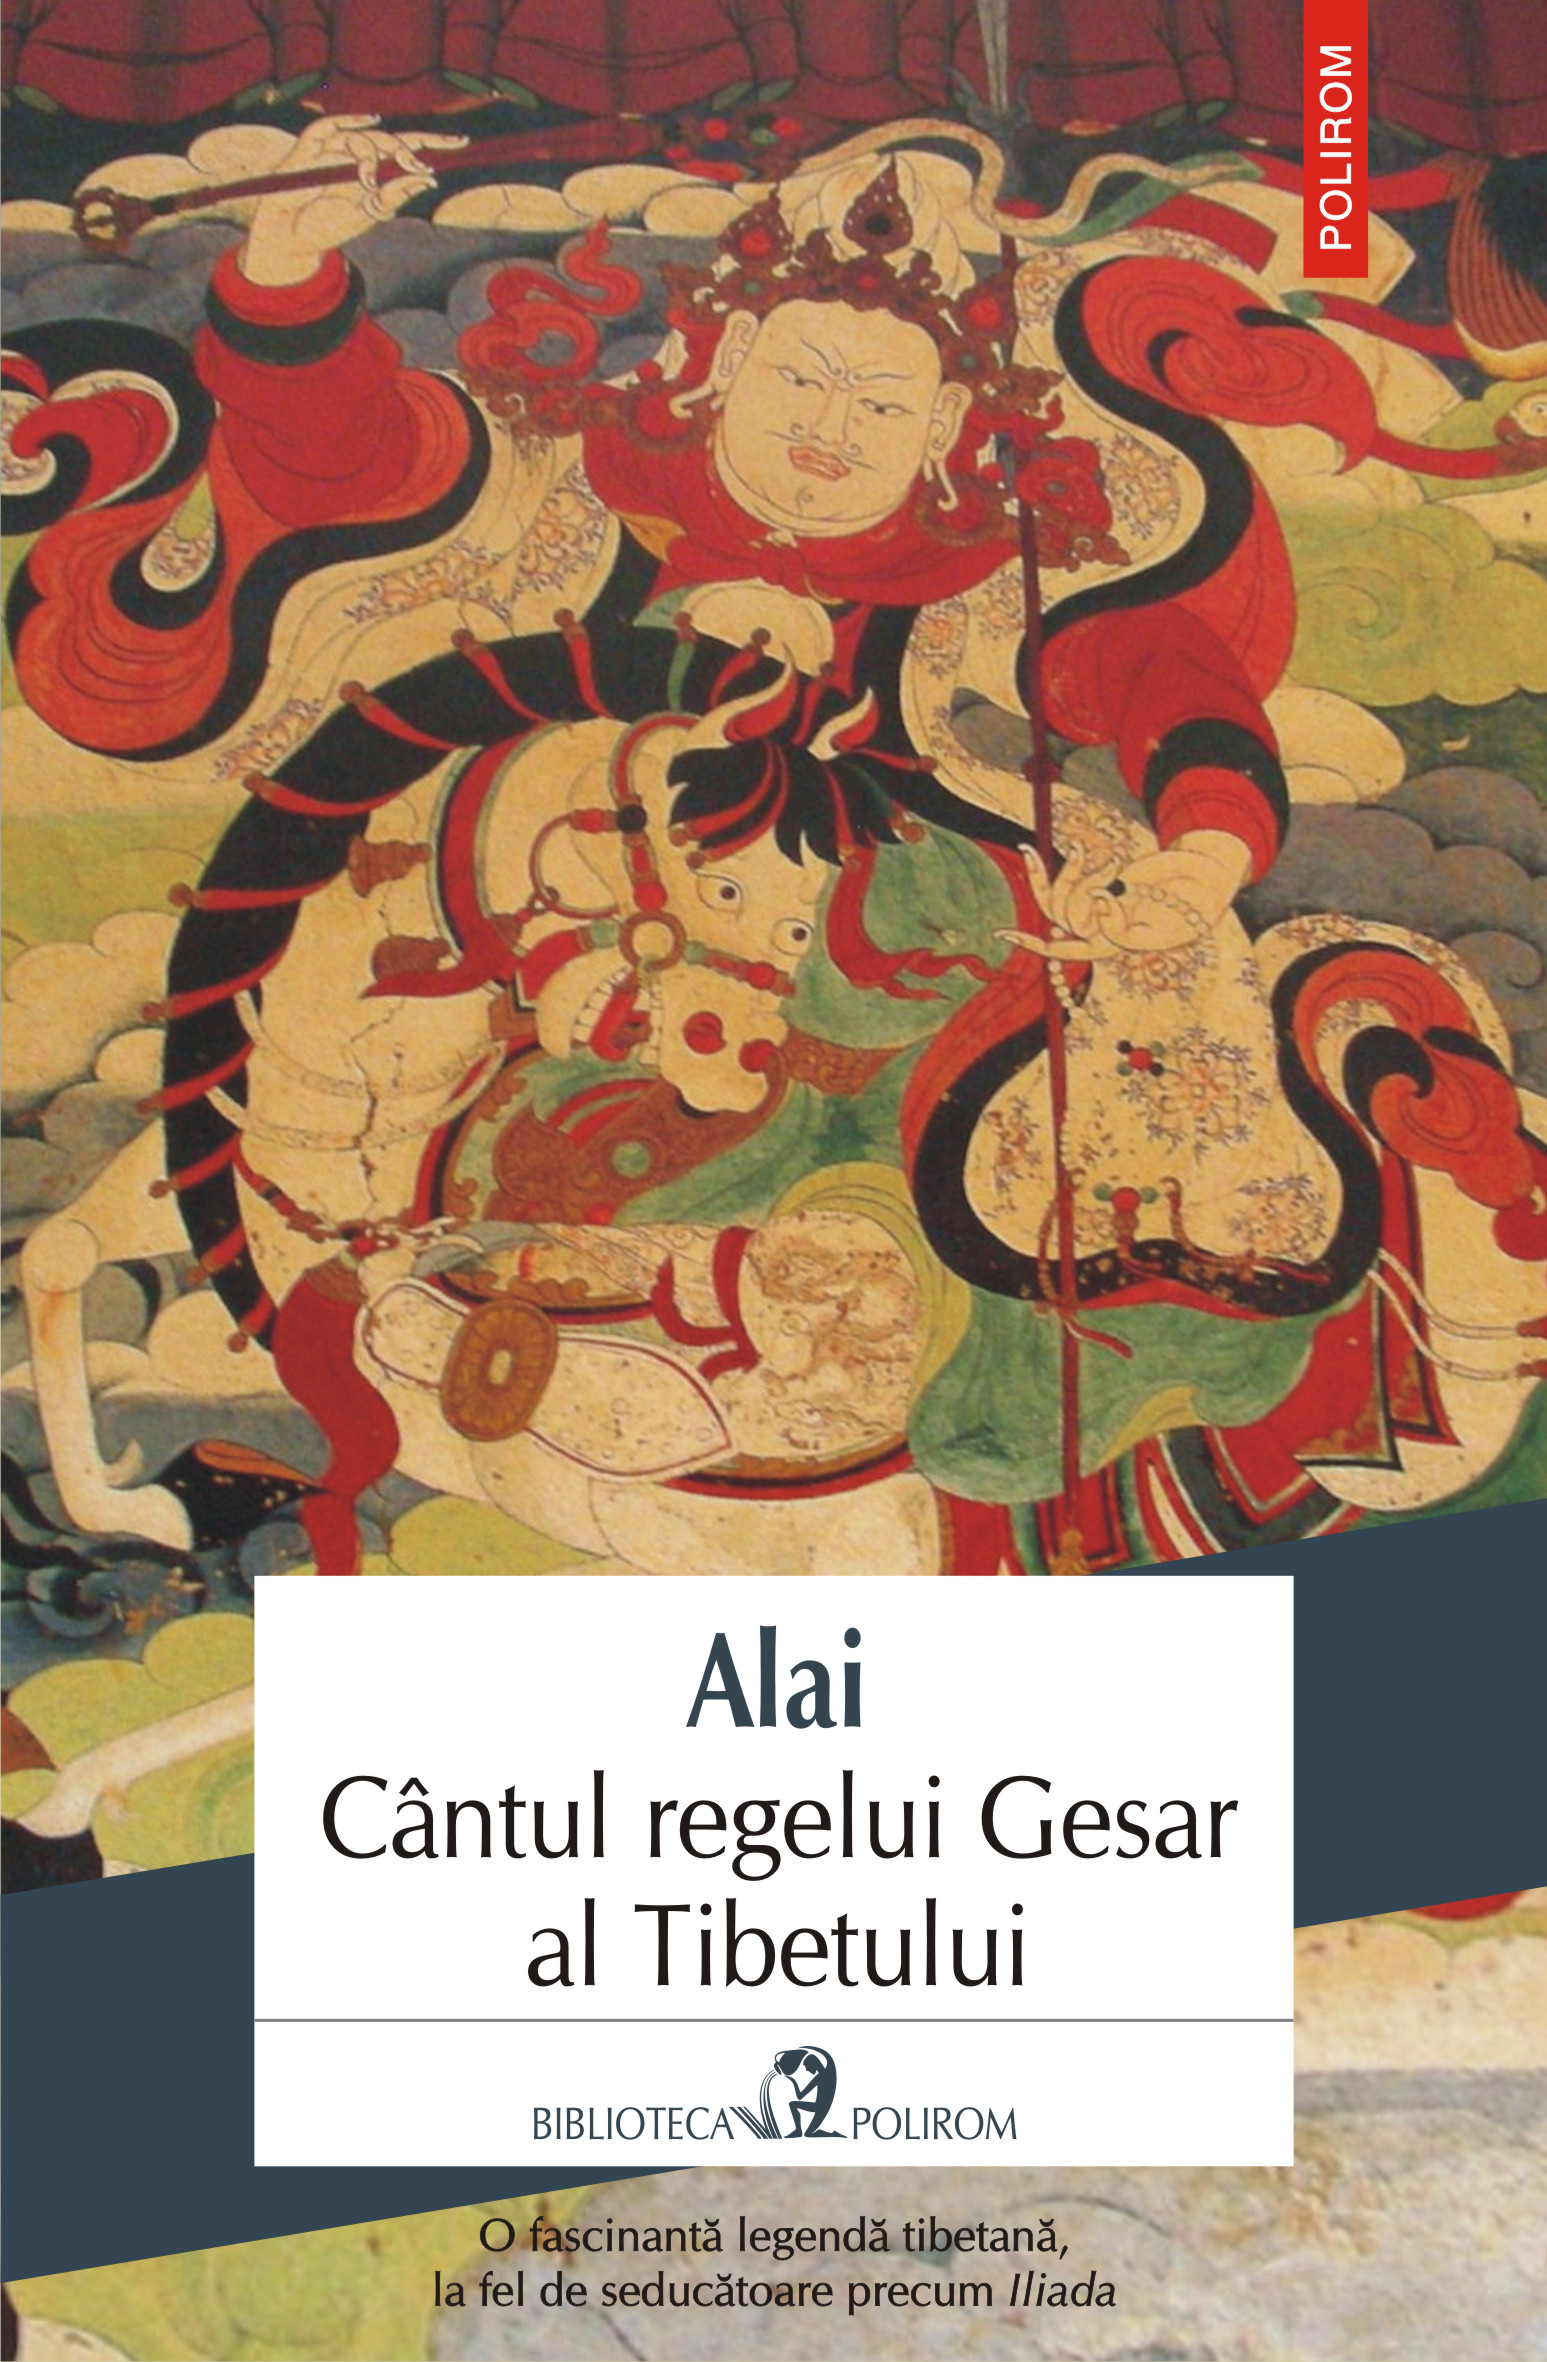 eBook Cantul regelui Gesar al Tibetului - Alai